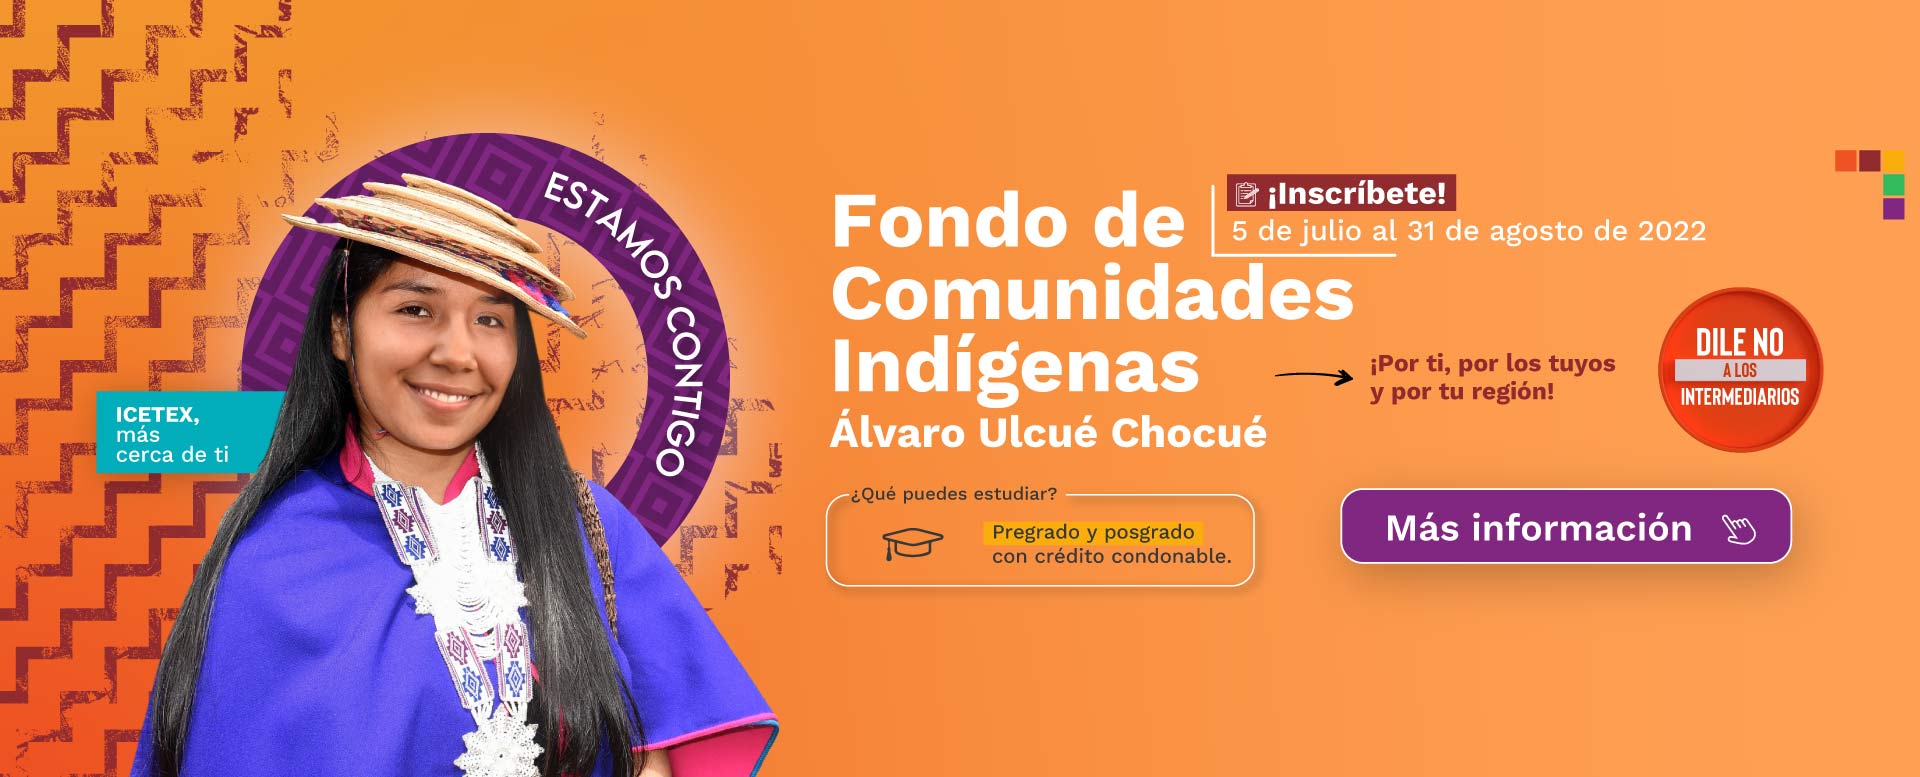 ¡Inscríbete! al Fondo de Comunidades Indígenas - Álvaro Ulcué Chocué.